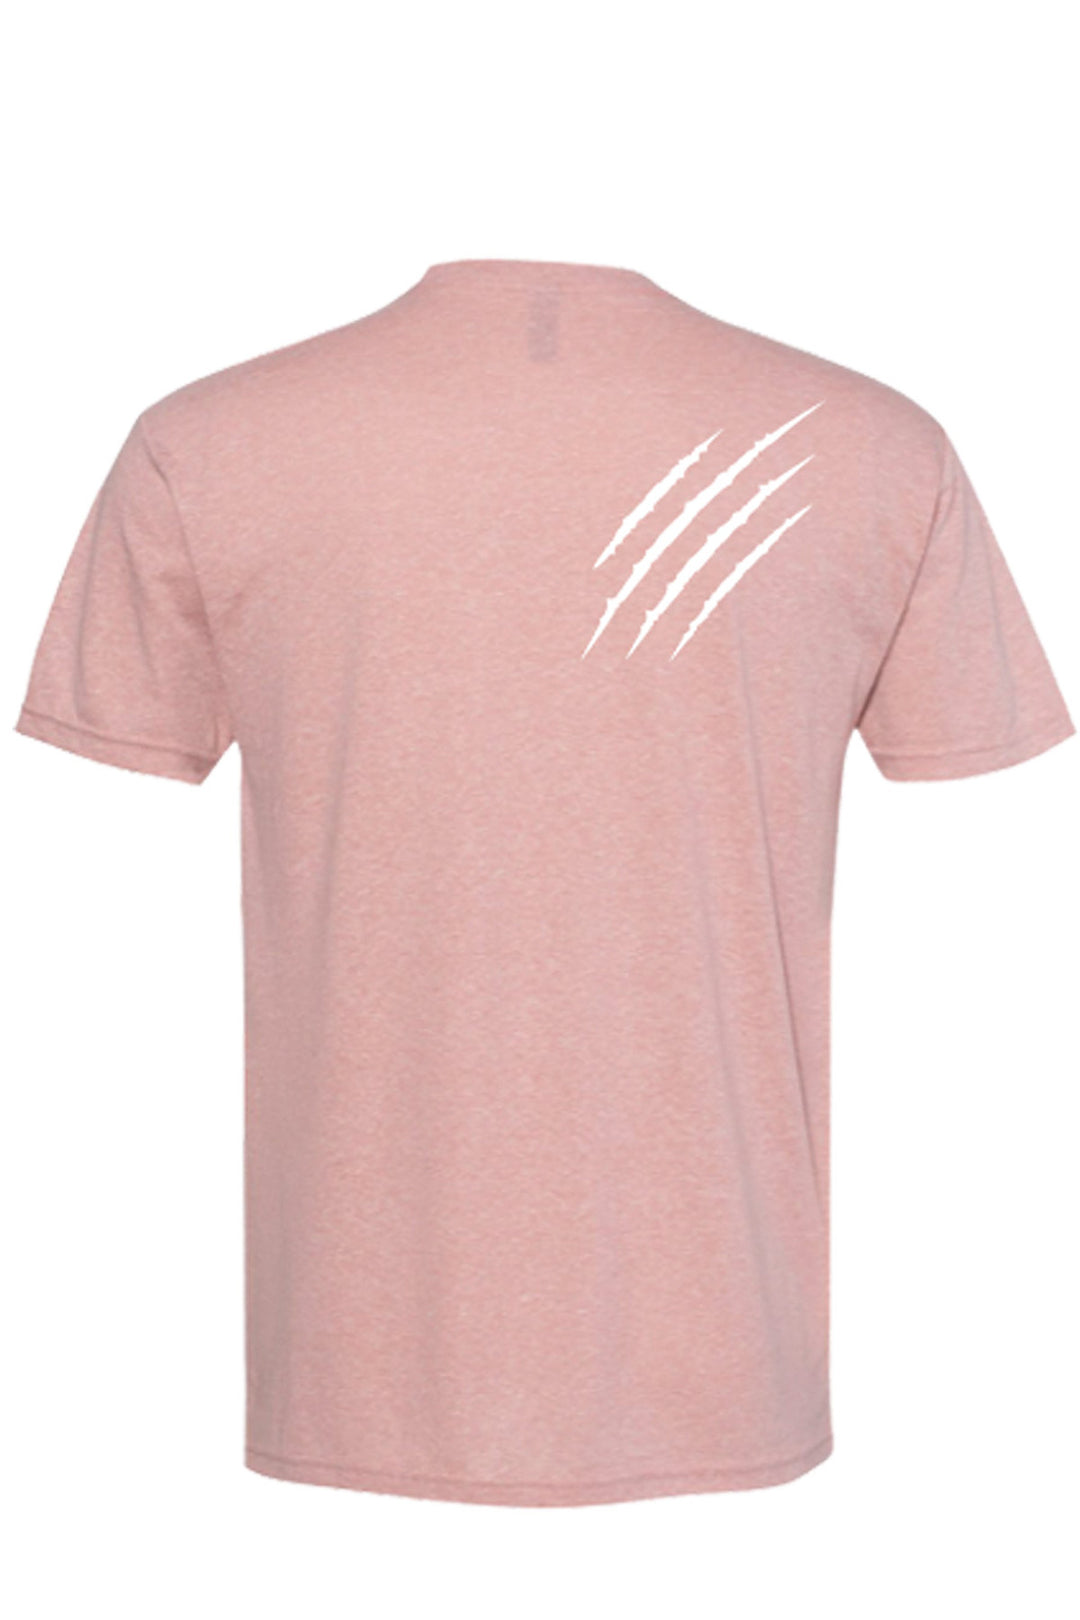 Unisex Triblend T-Shirt - Scratch